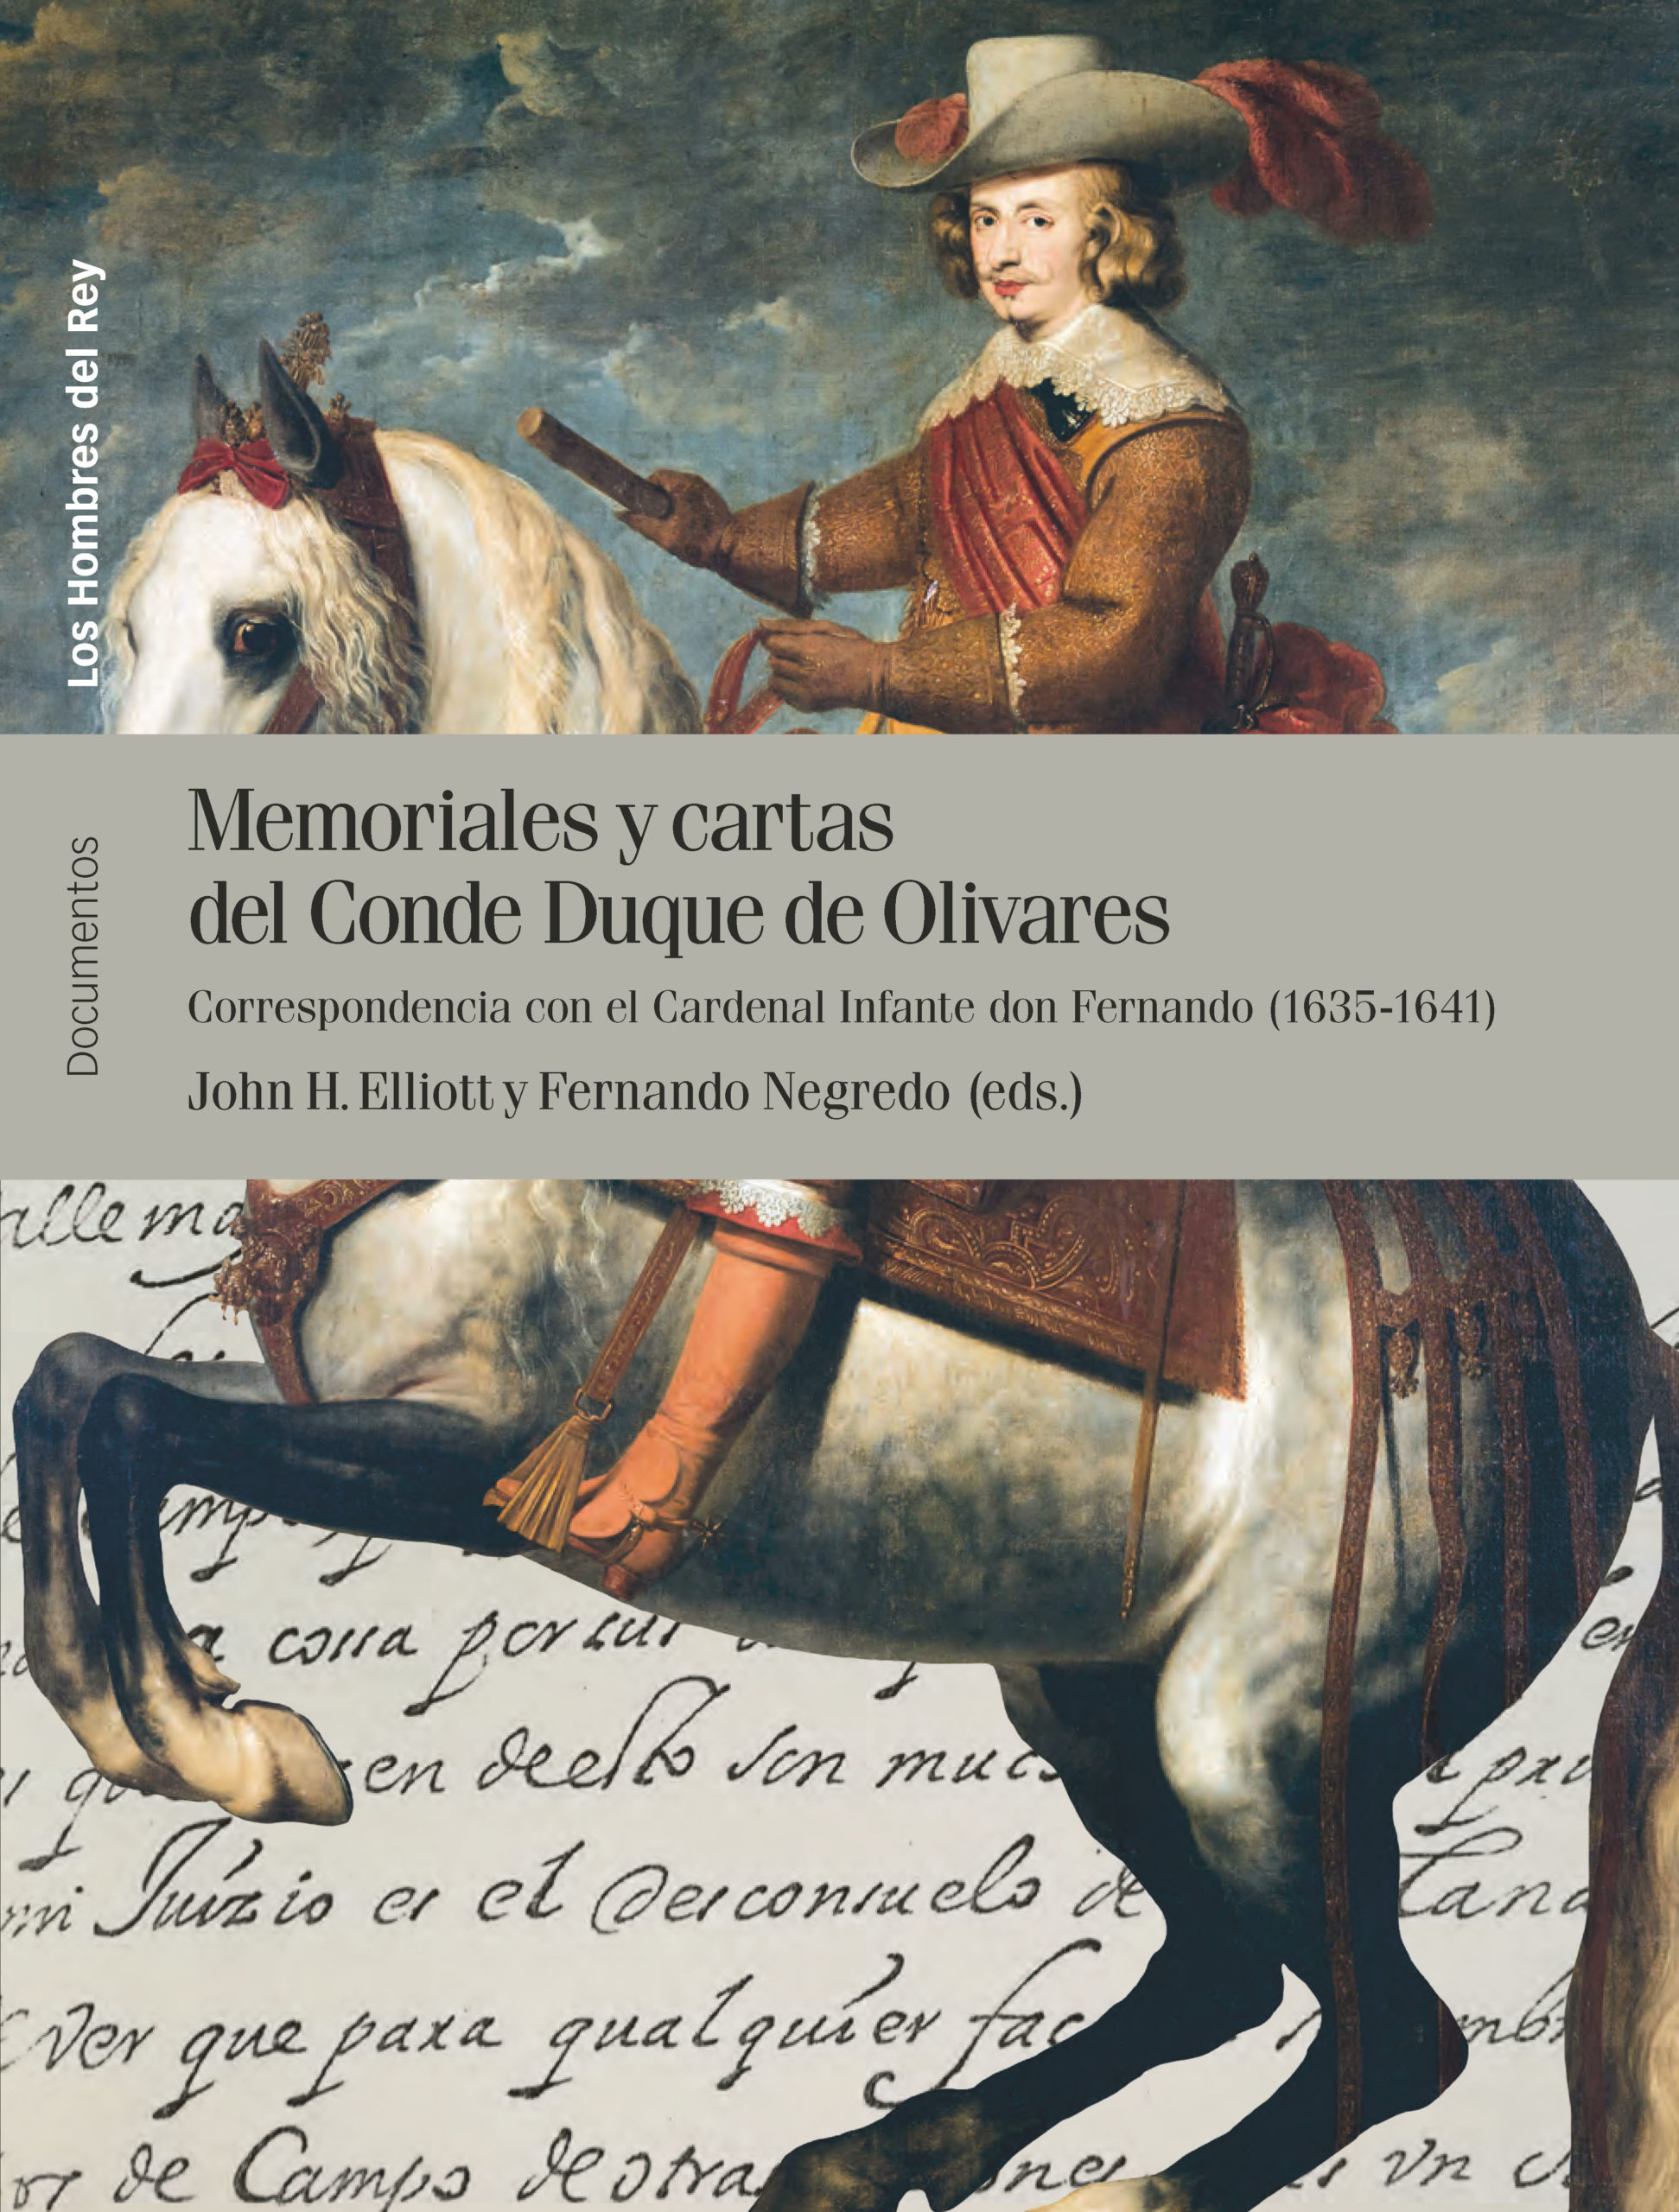 Memoriales y cartas del Conde Duque de Olivares durante la Guerra de los Treinta Años